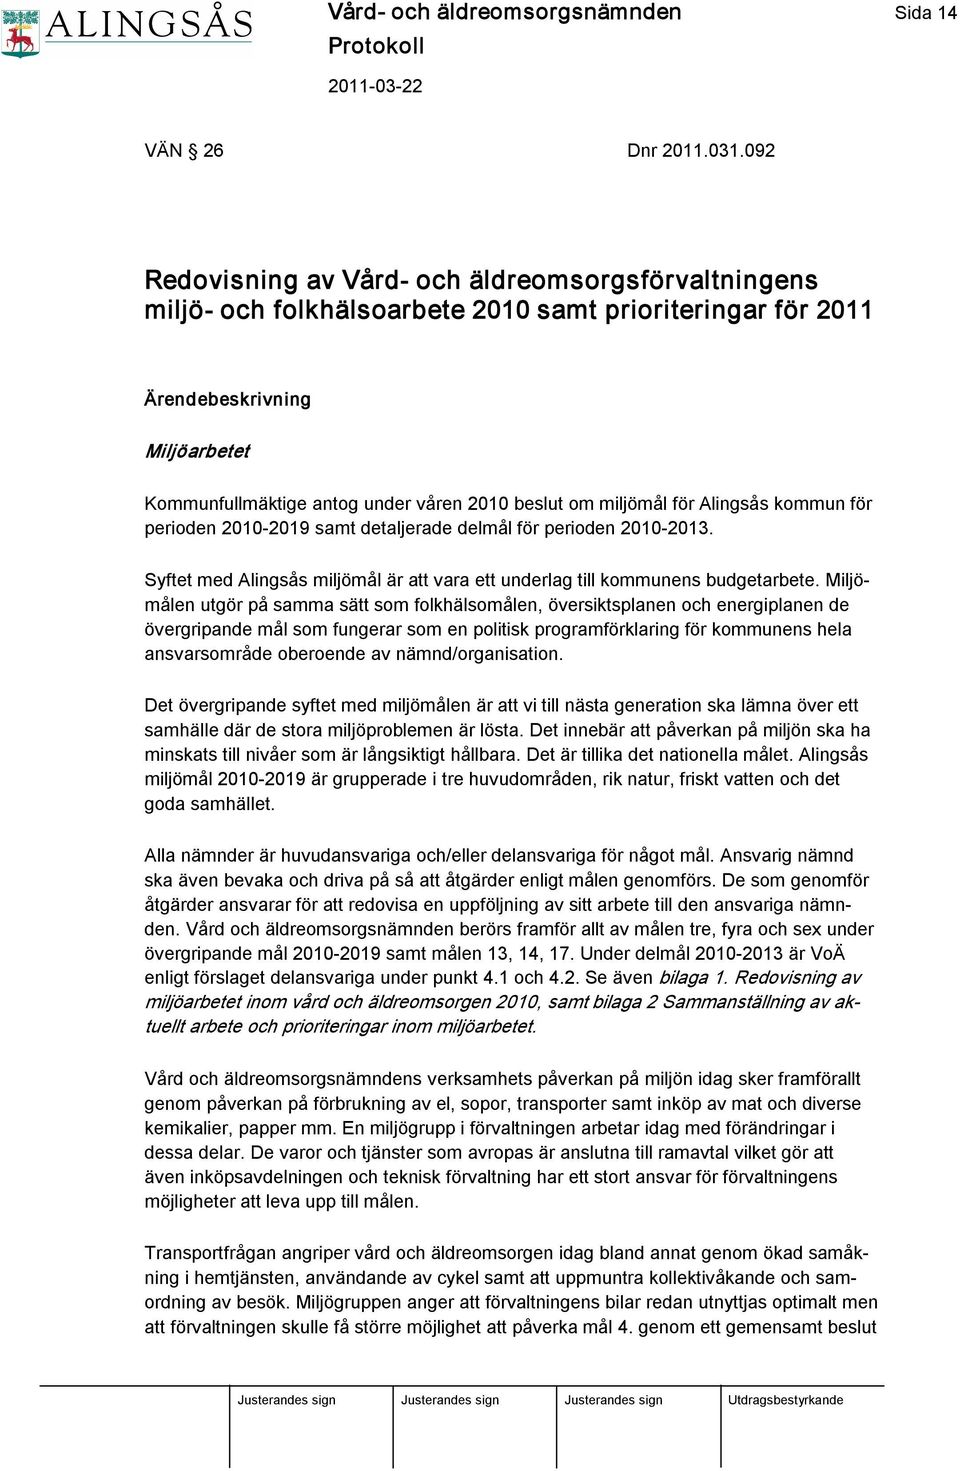 miljömål för Alingsås kommun för perioden 2010 2019 samt detaljerade delmål för perioden 2010 2013. Syftet med Alingsås miljömål är att vara ett underlag till kommunens budgetarbete.